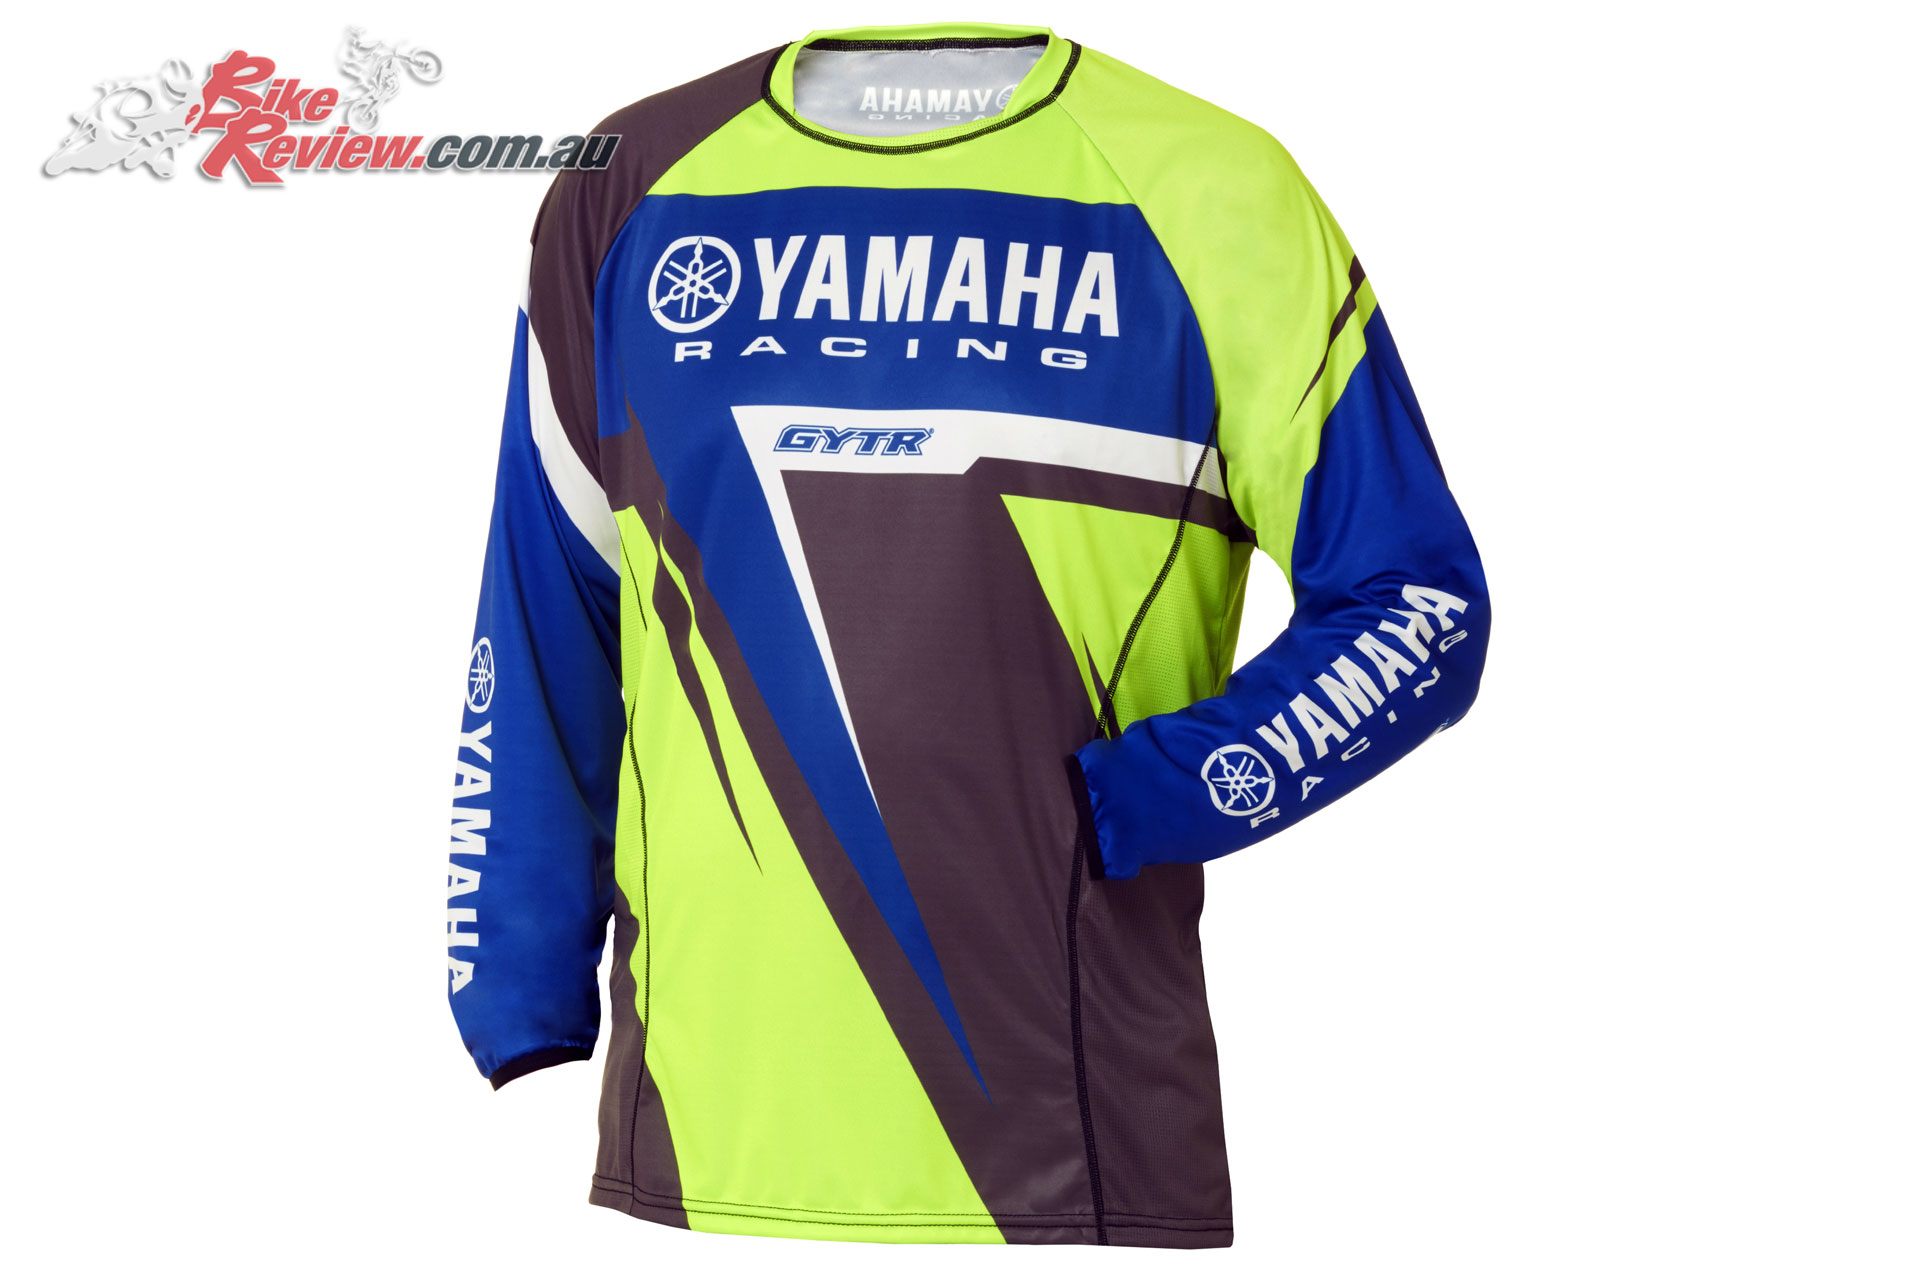 YAMAHA RACING MX GLOVES ADULTS MOTOCROSS DIRT OFFROAD #A17‐GG104‐G1